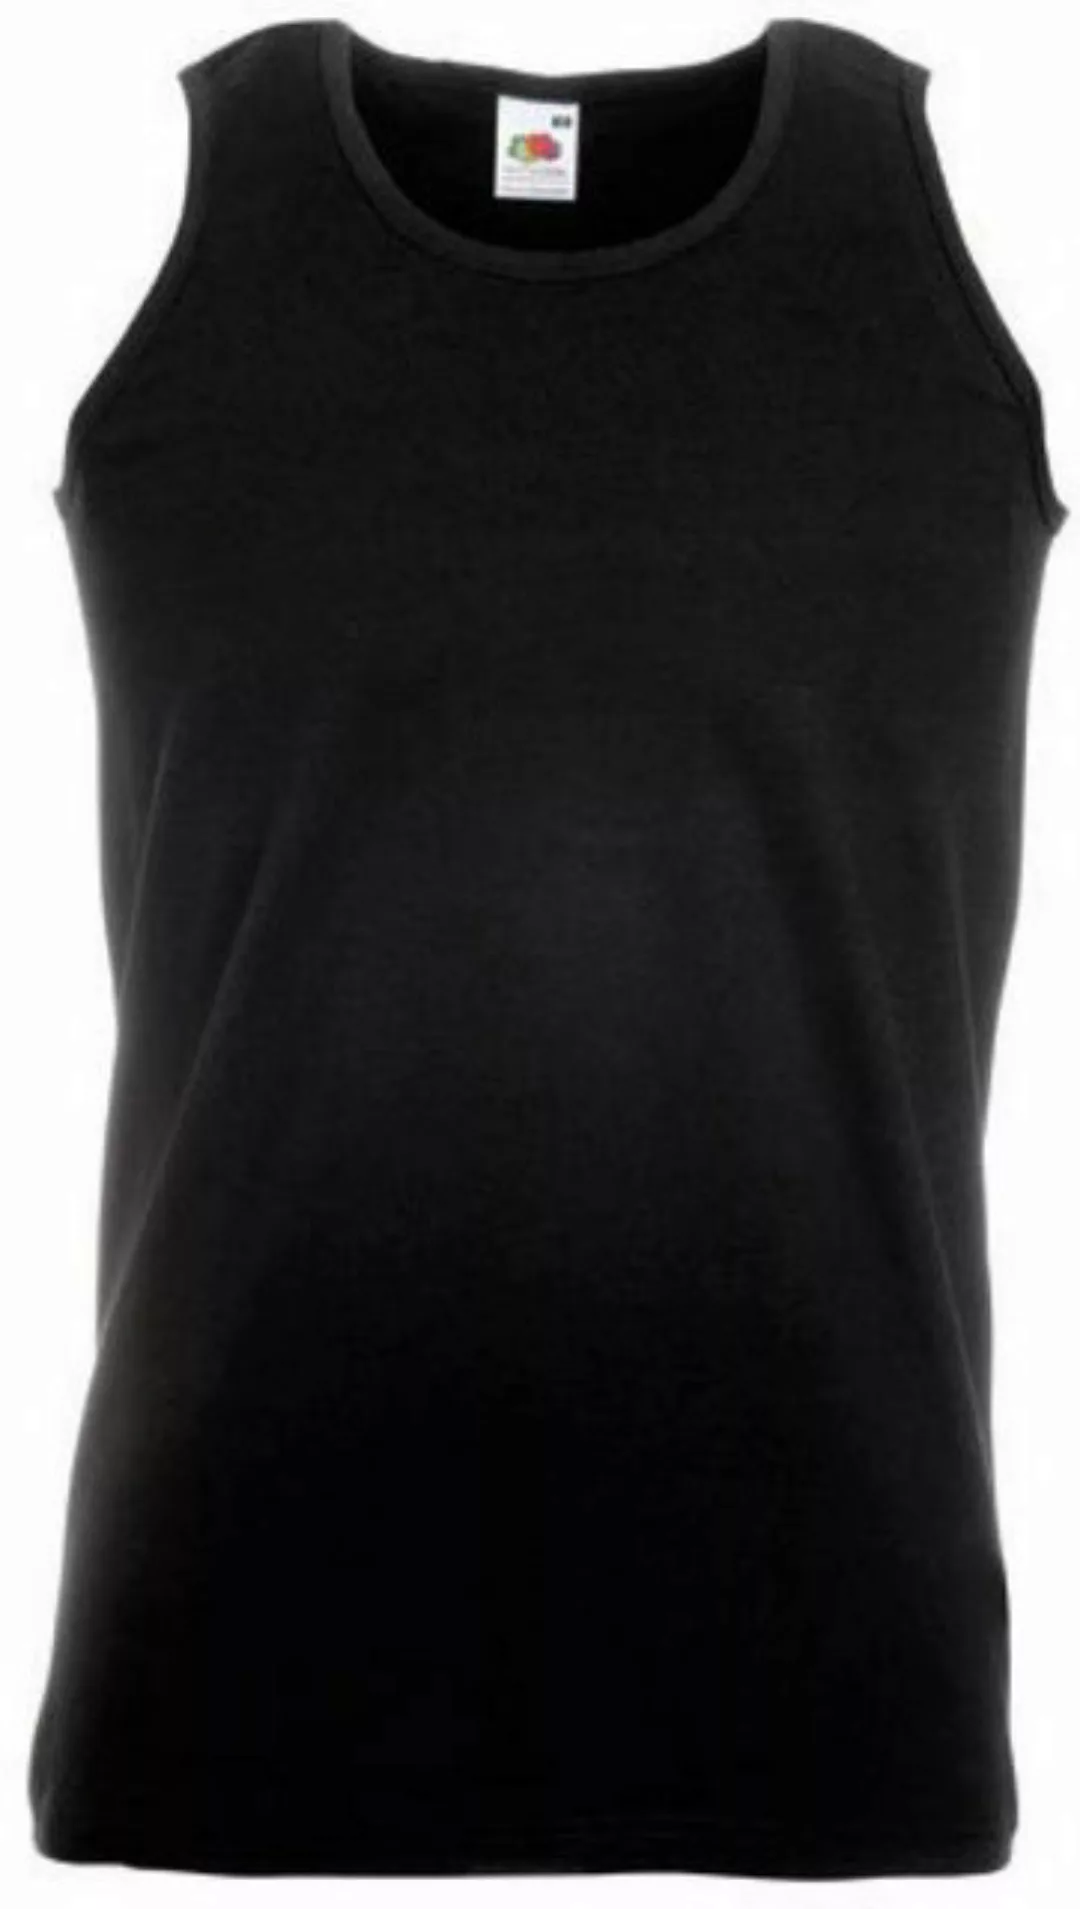 Fruit of the Loom Tanktop Athletic Vest Tank Top Herren T-Shirt günstig online kaufen